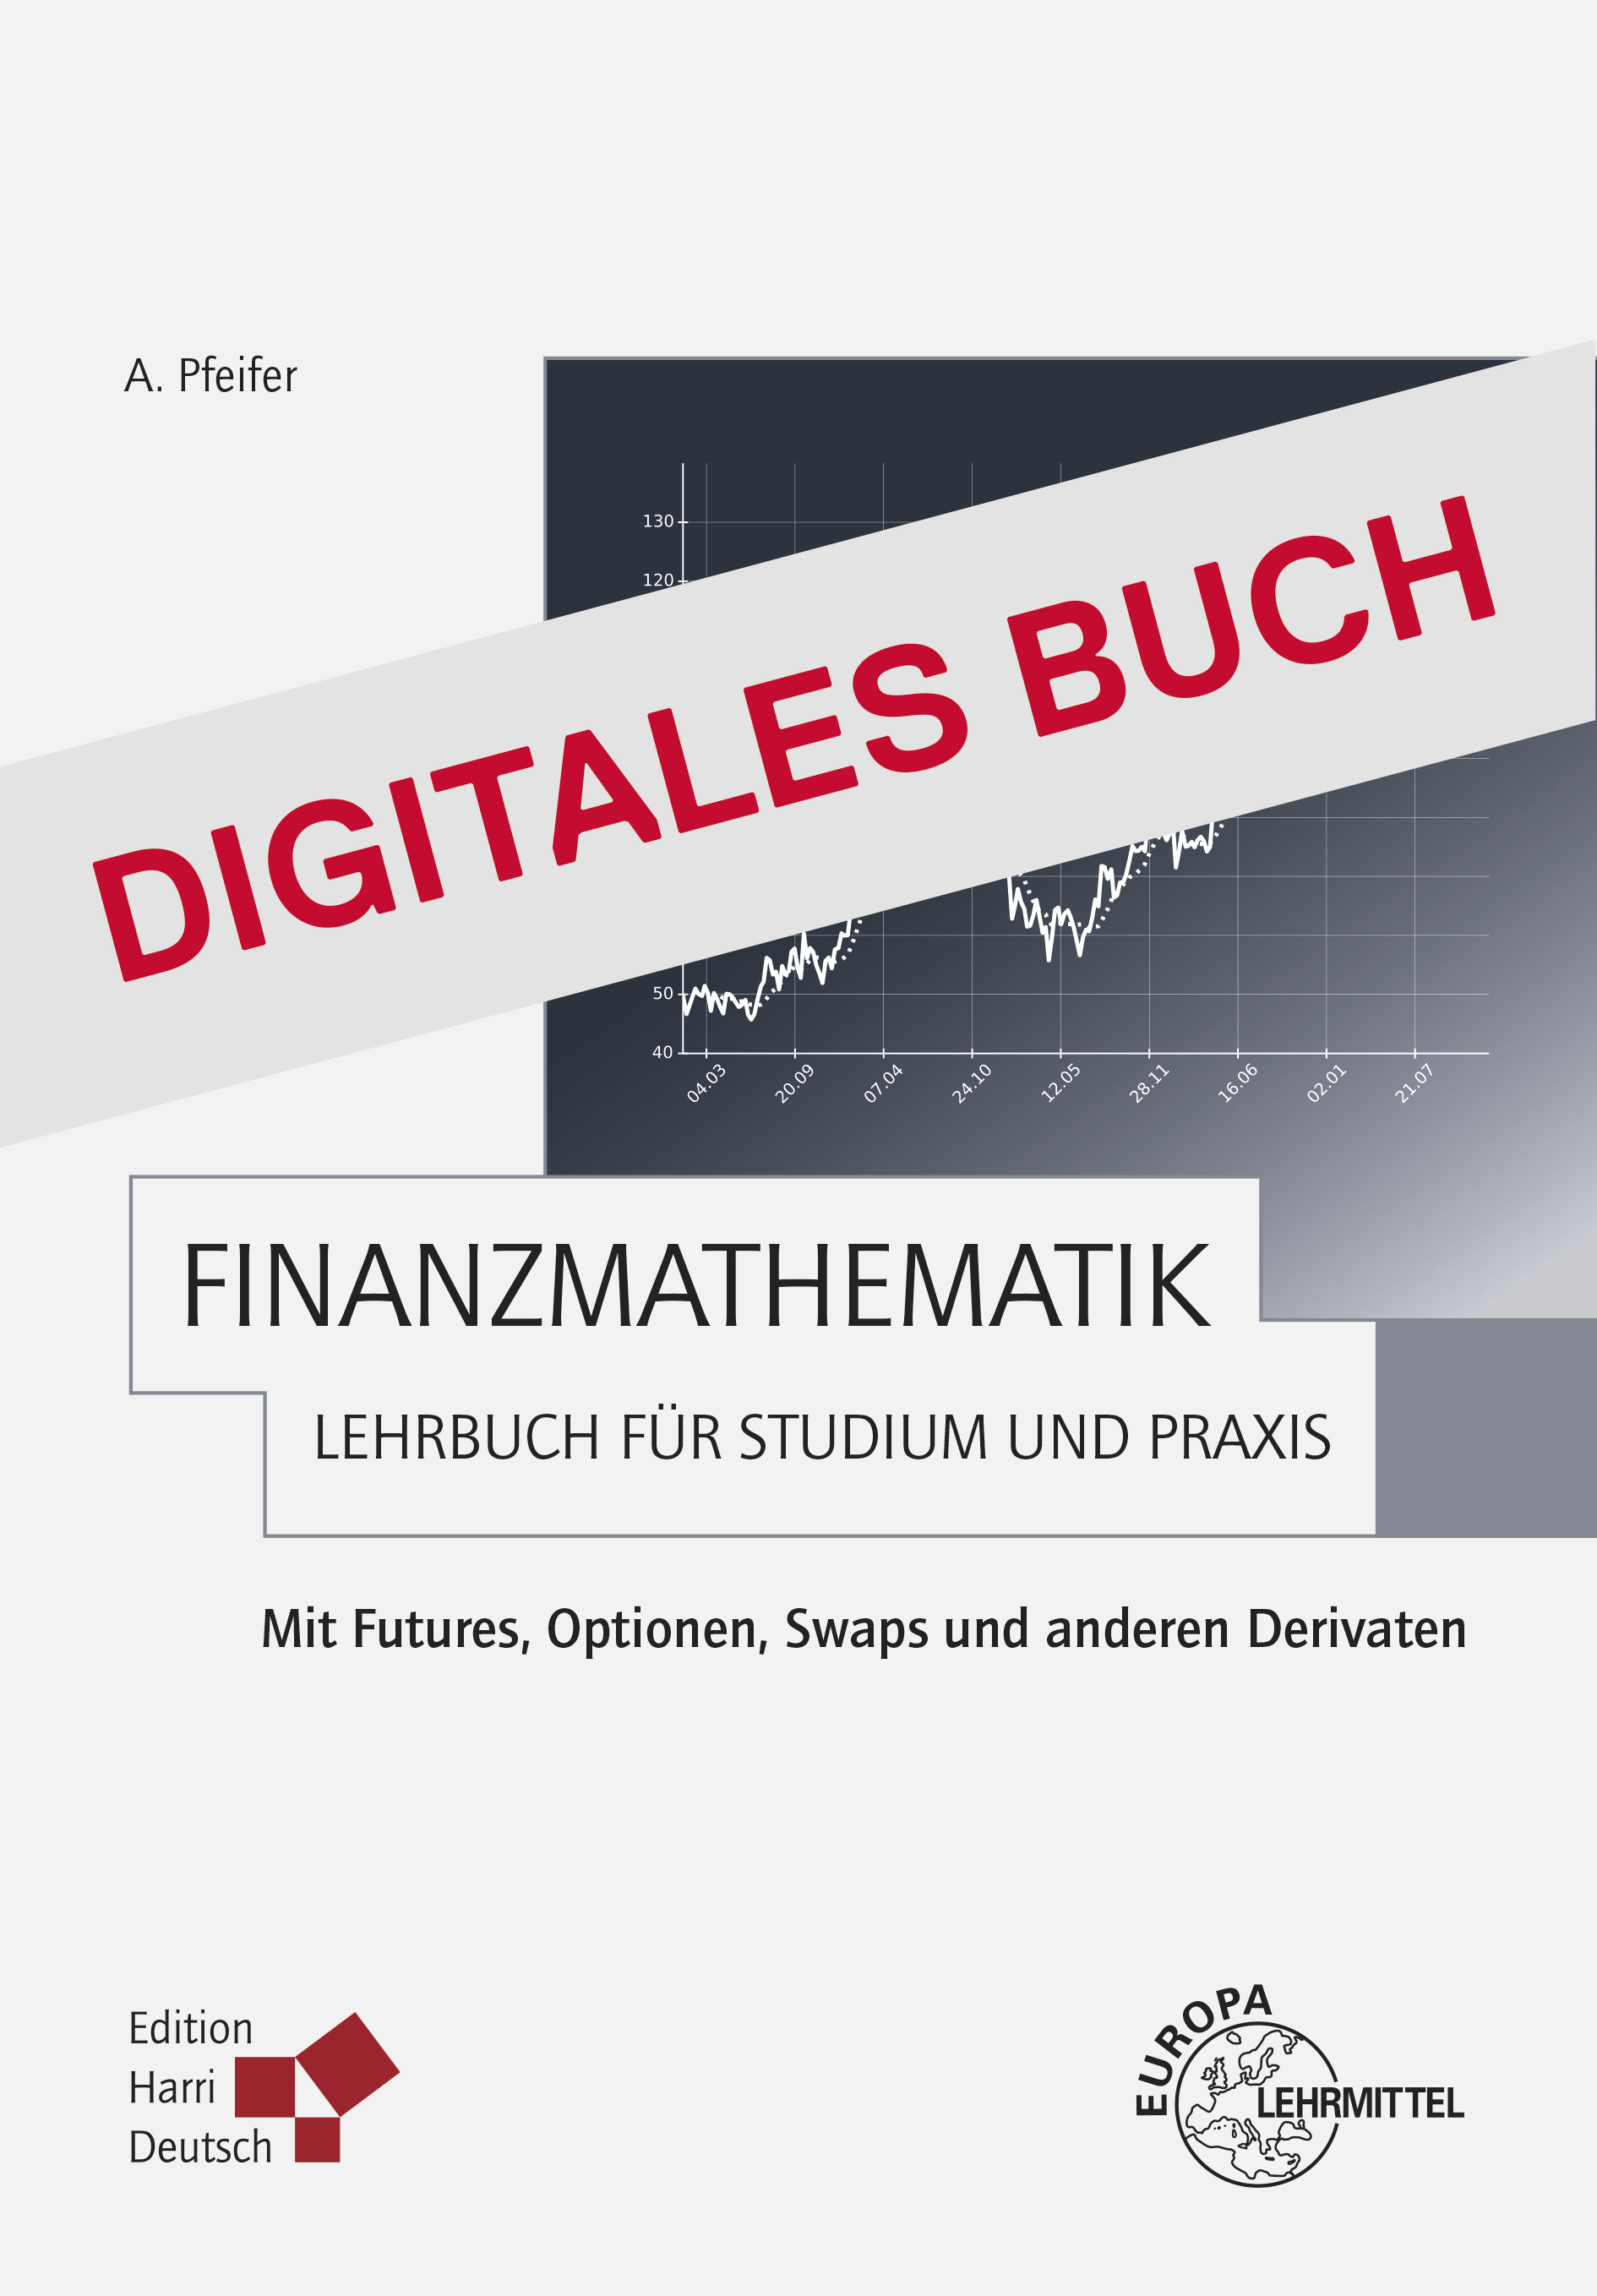 Finanzmathematik - Lehrbuch für Studium und Praxis - Digitales Buch